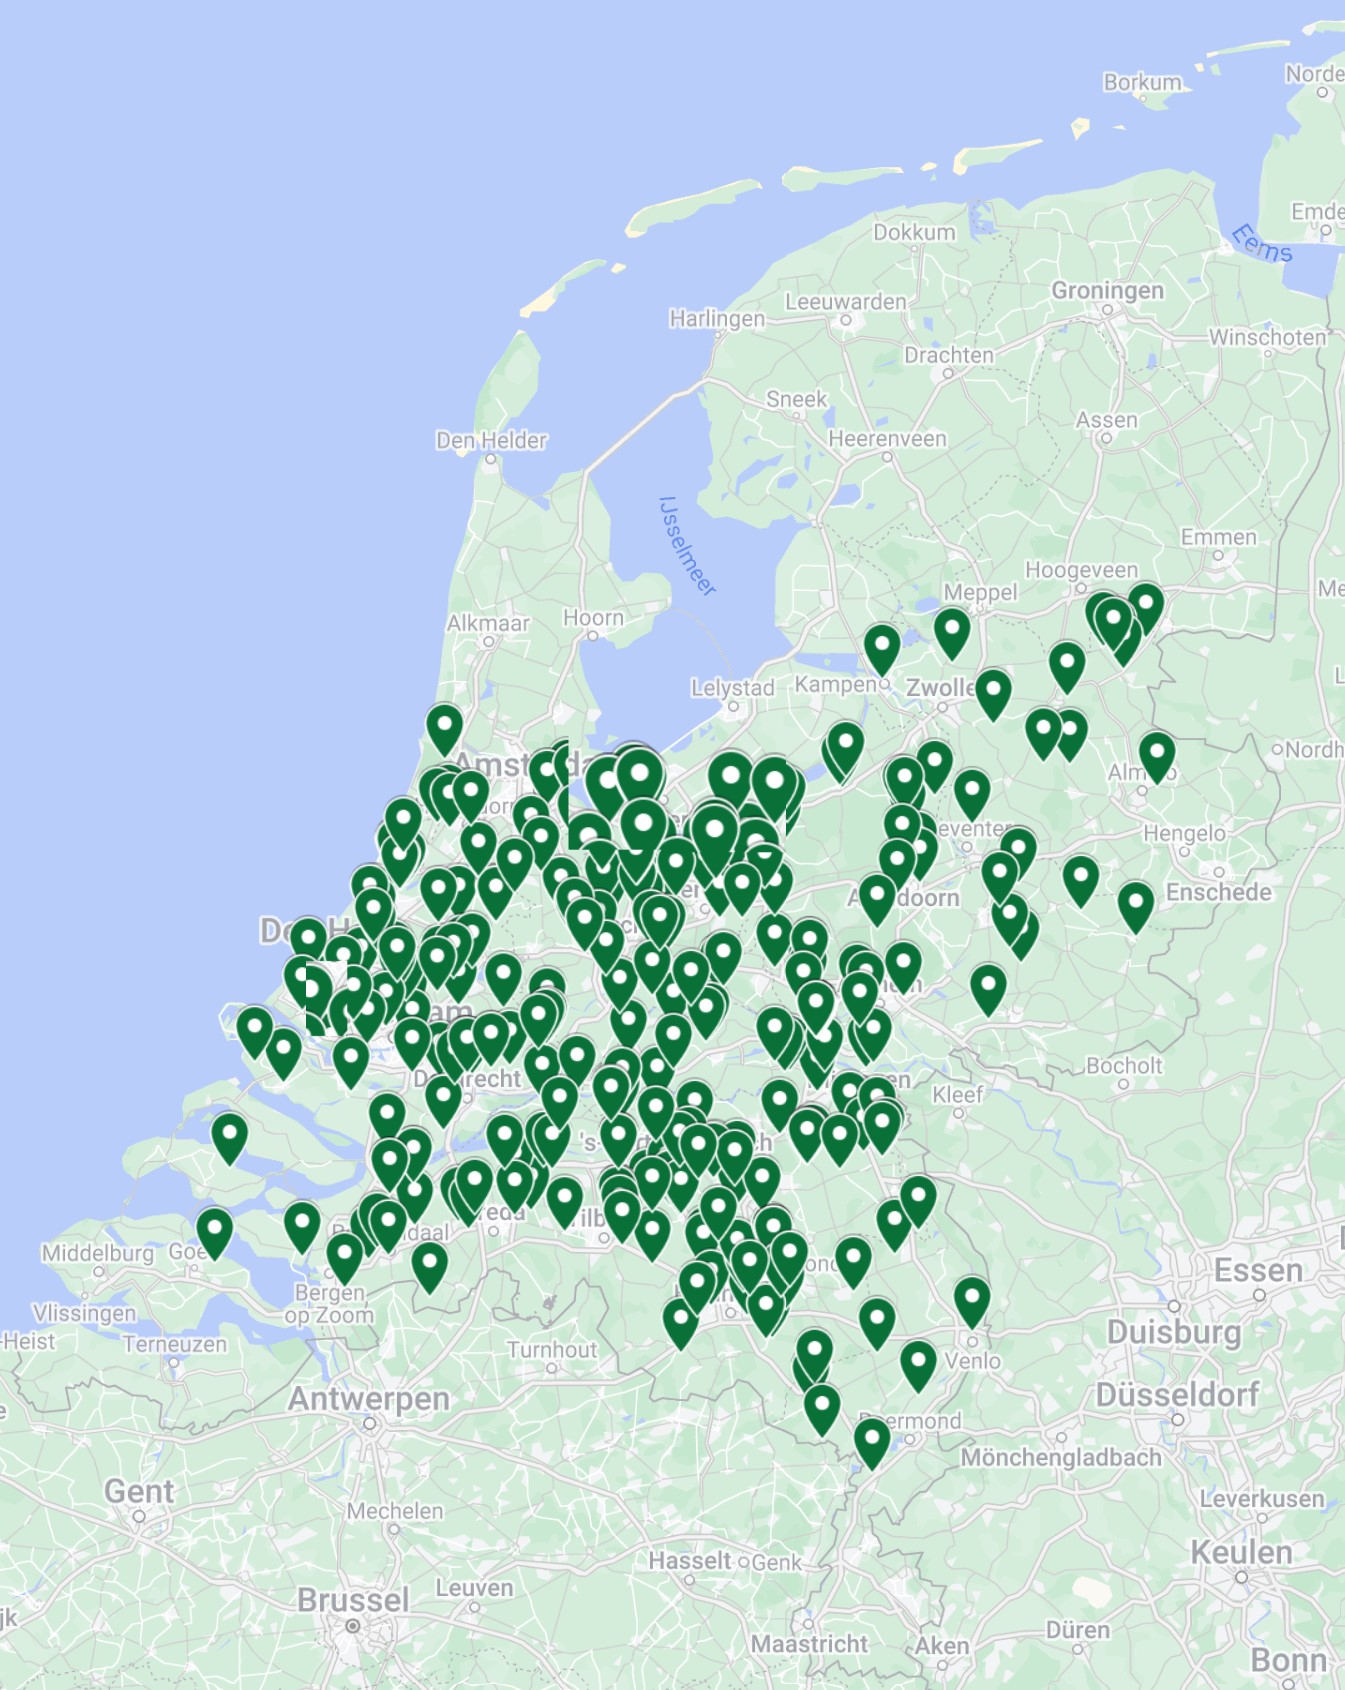 warmtepompinstallaties op bodemenergie in Nederland gerealiseerd door Ynergy